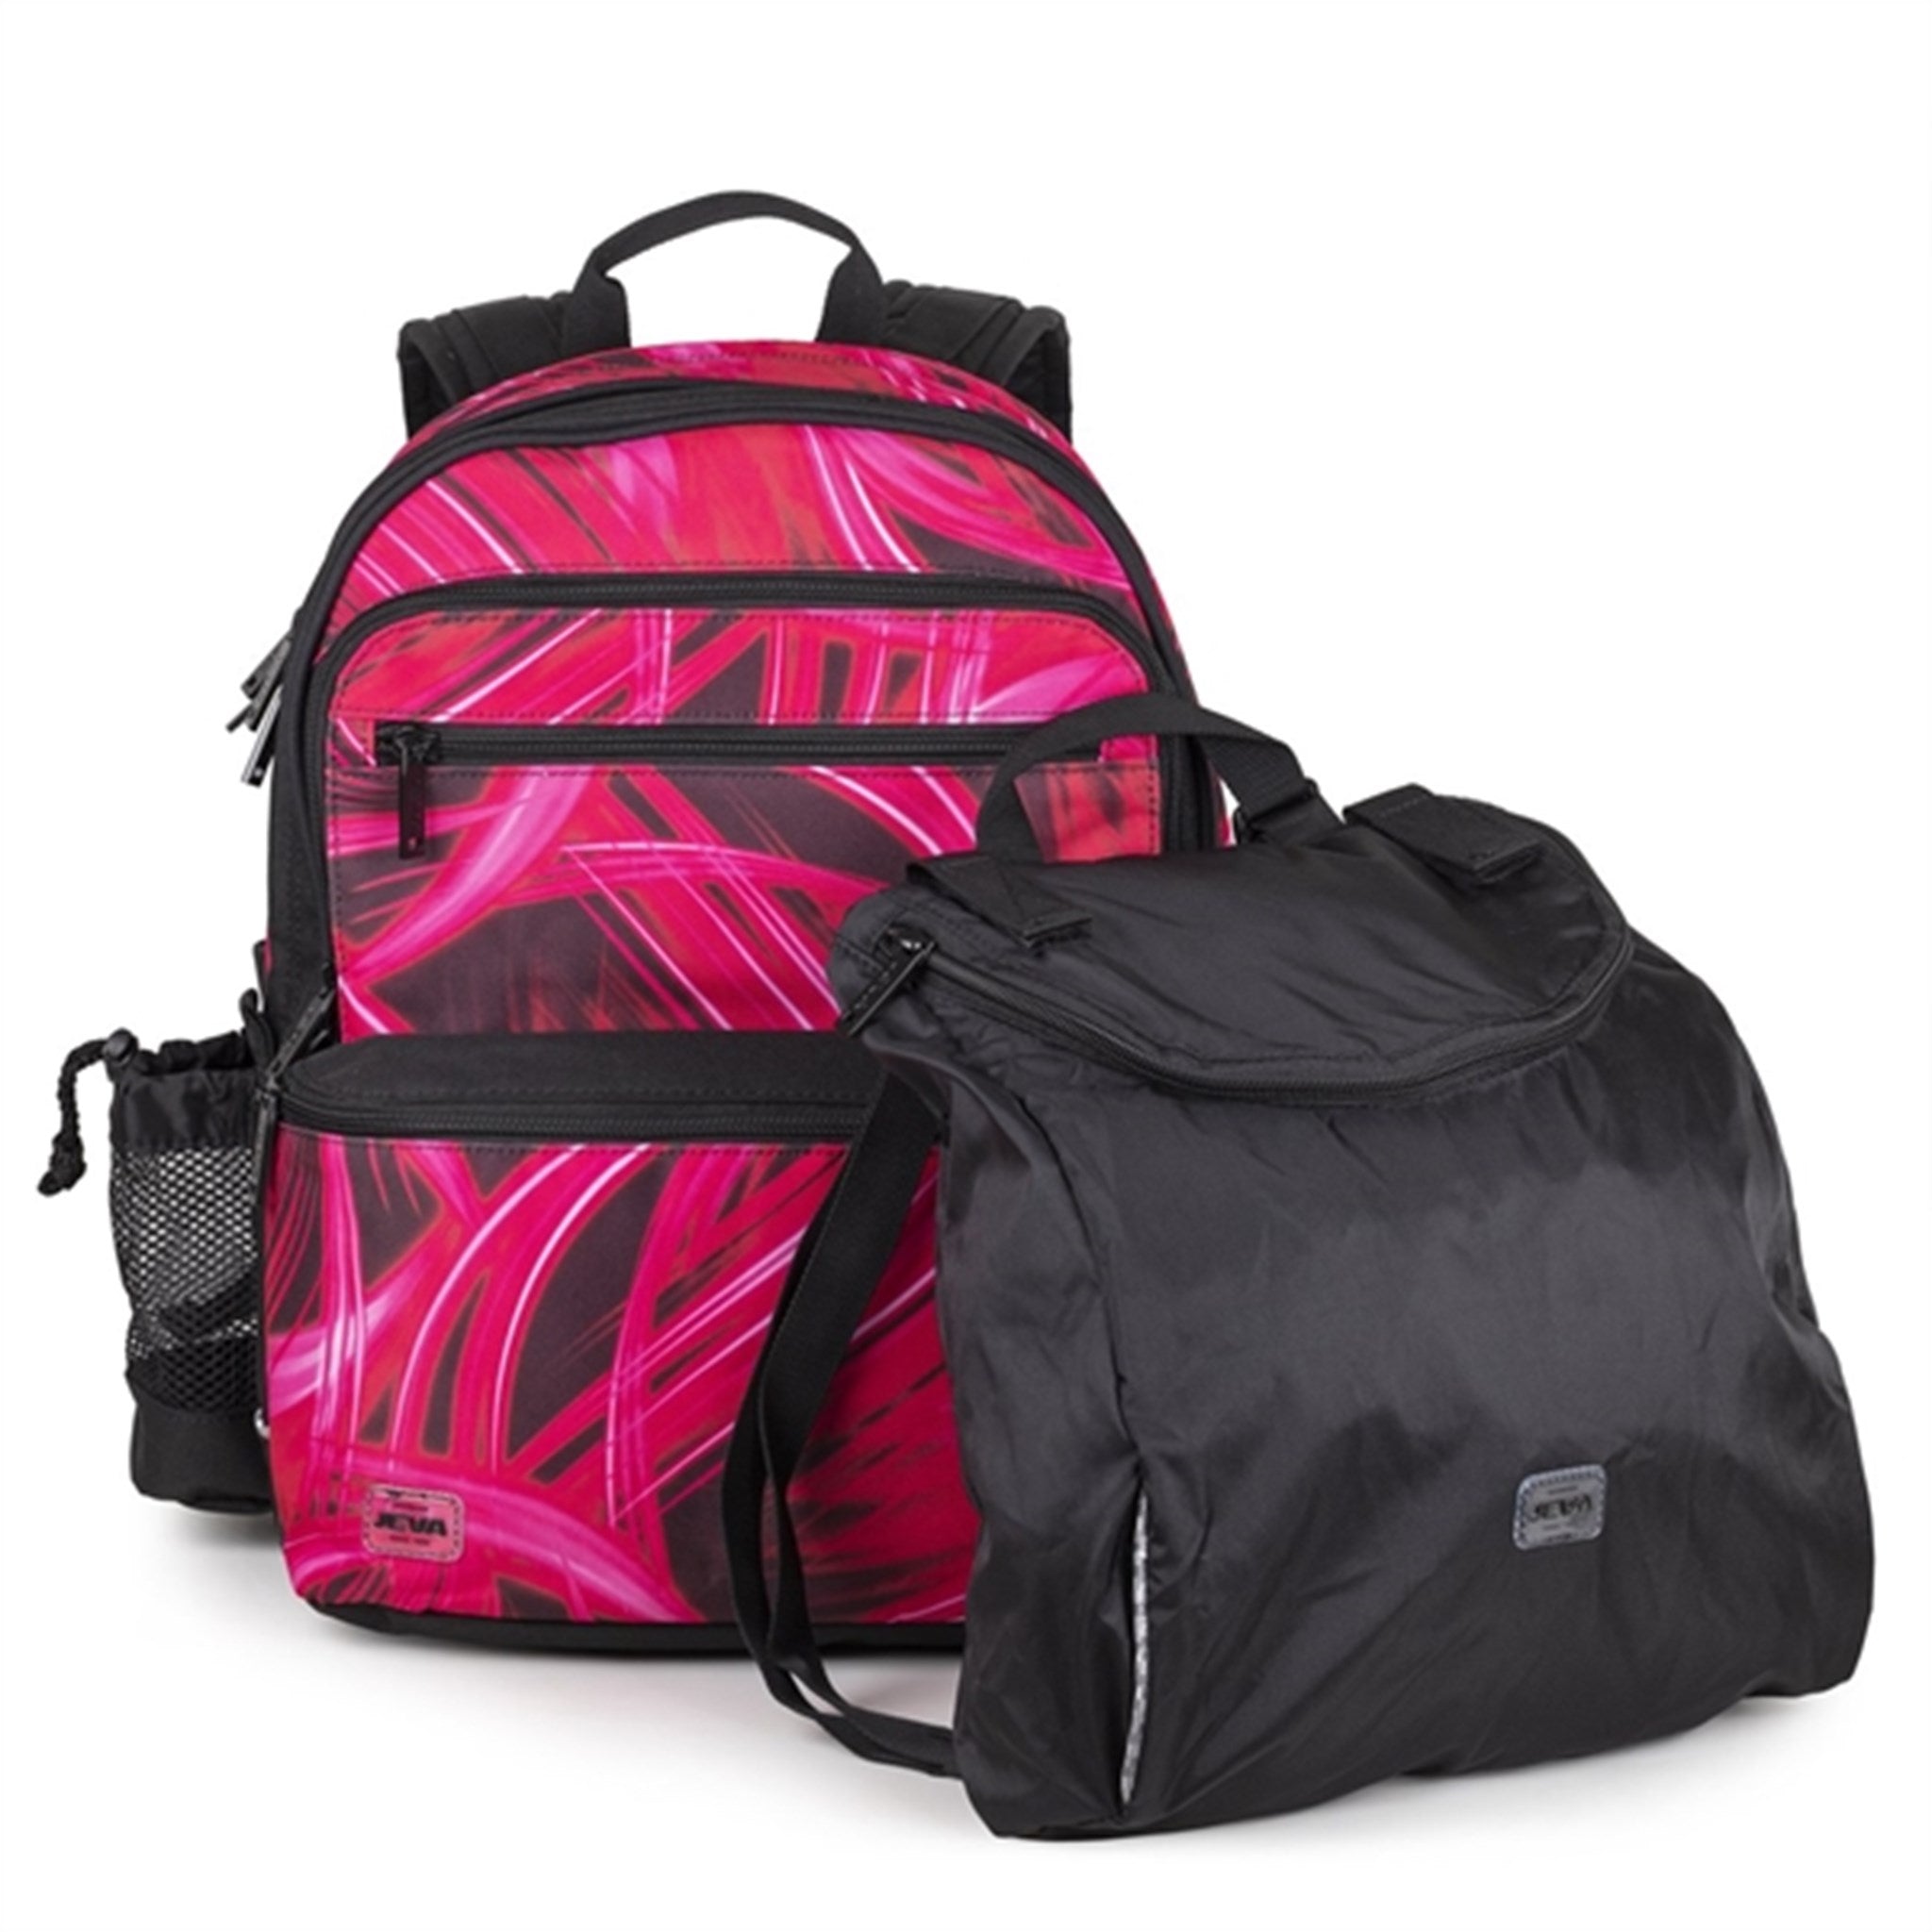 JEVA Backpack Pink Lightning